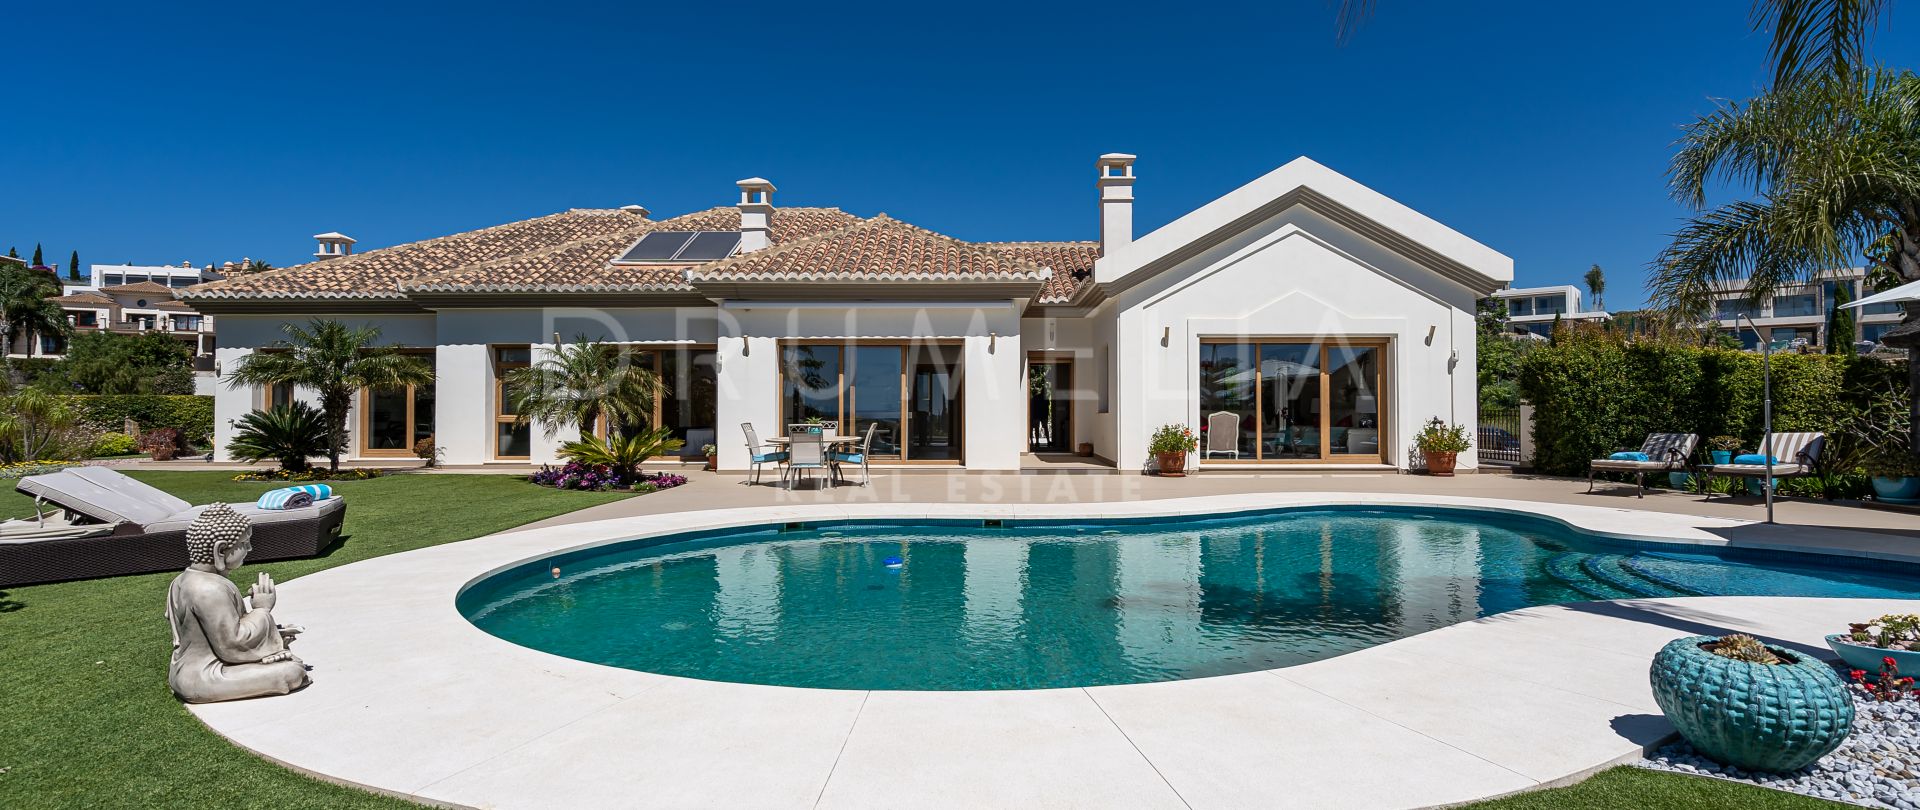 Charmig villa i andalusisk stil med klassisk modern inredning och havsutsikt, Los Flamingos,Benahavis